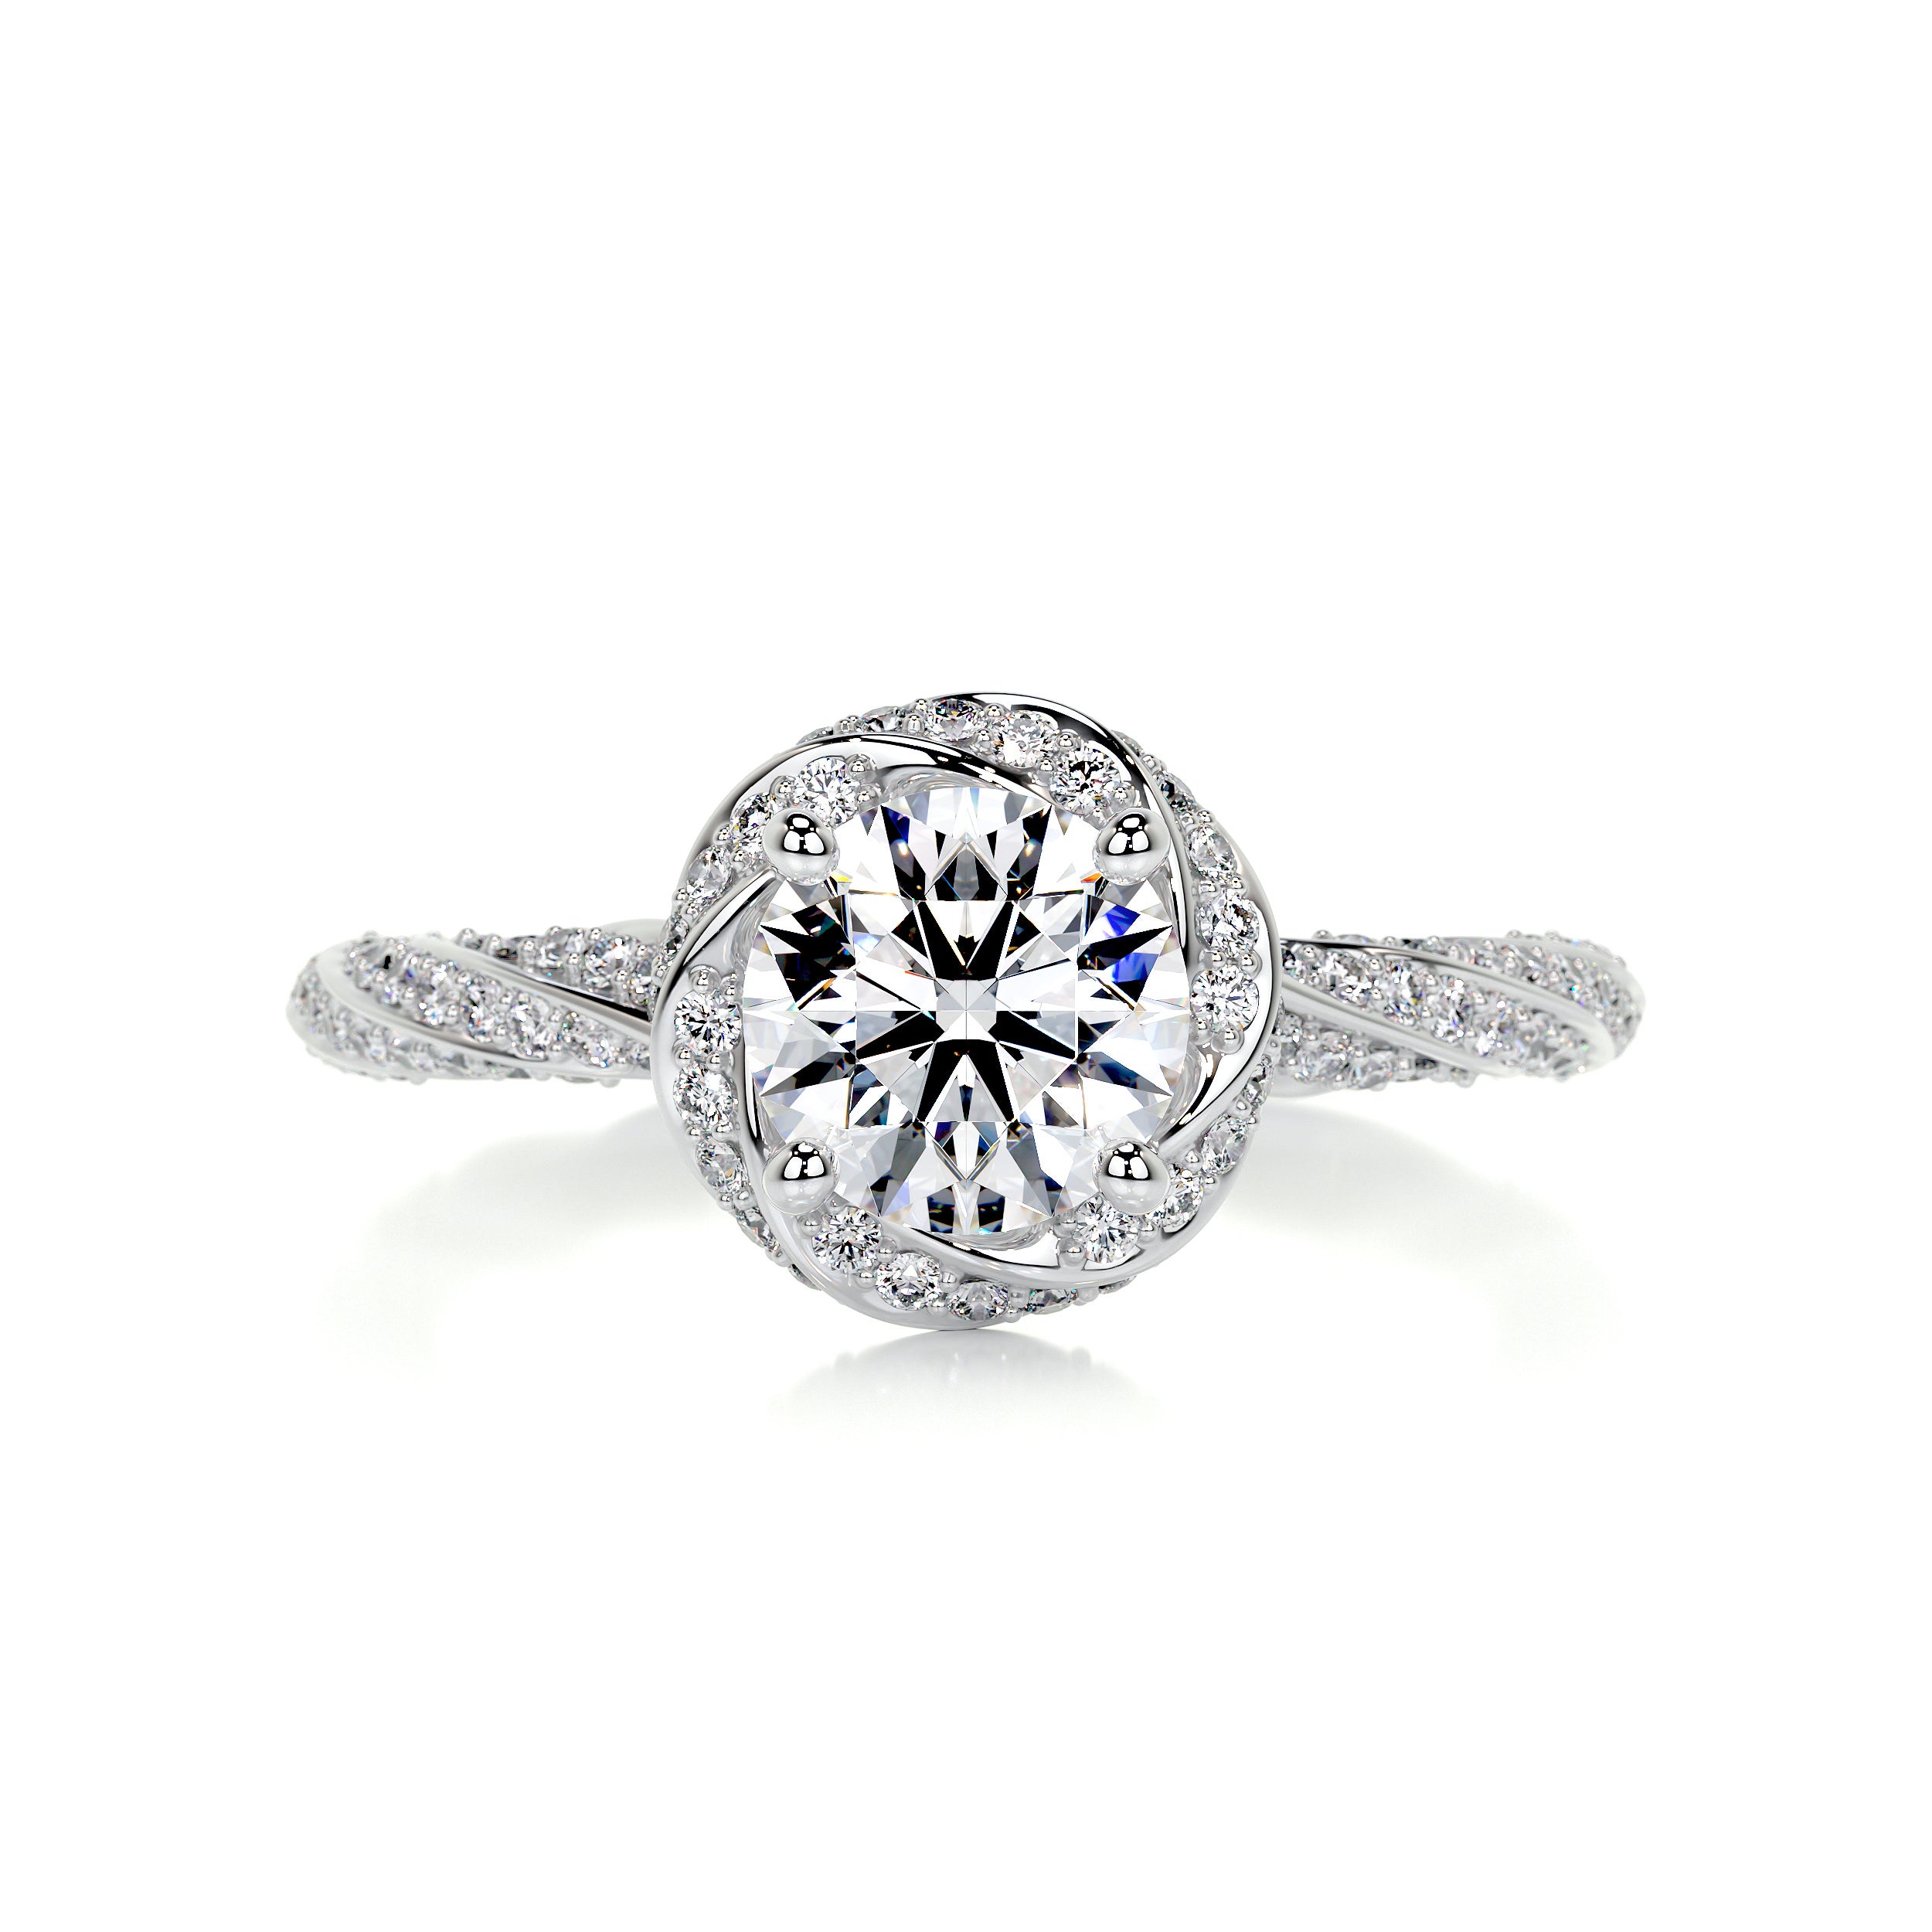 Joanne Diamond Engagement Ring -14K White Gold